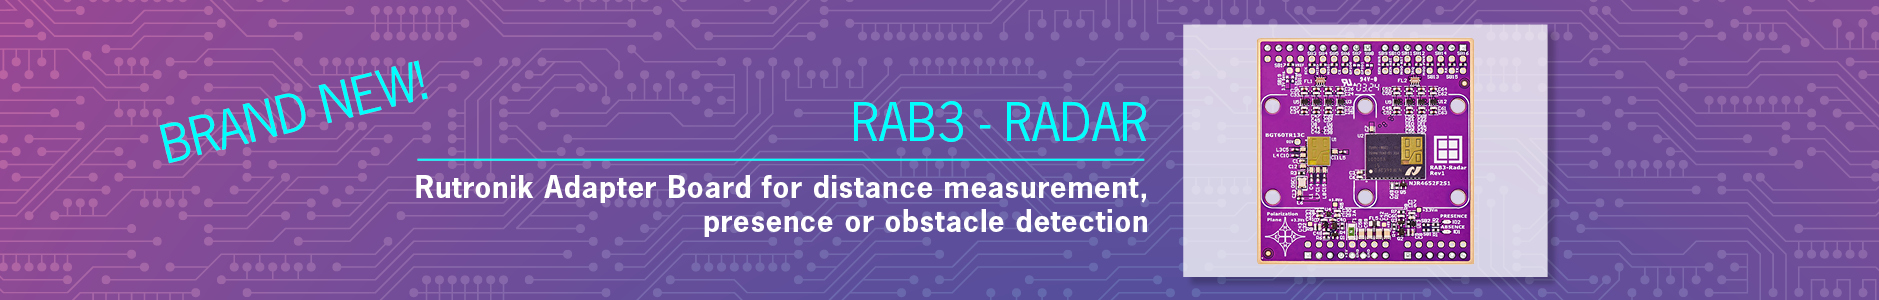 Rutronik Adapter Board – RAB3 für Radar-Anwendungen